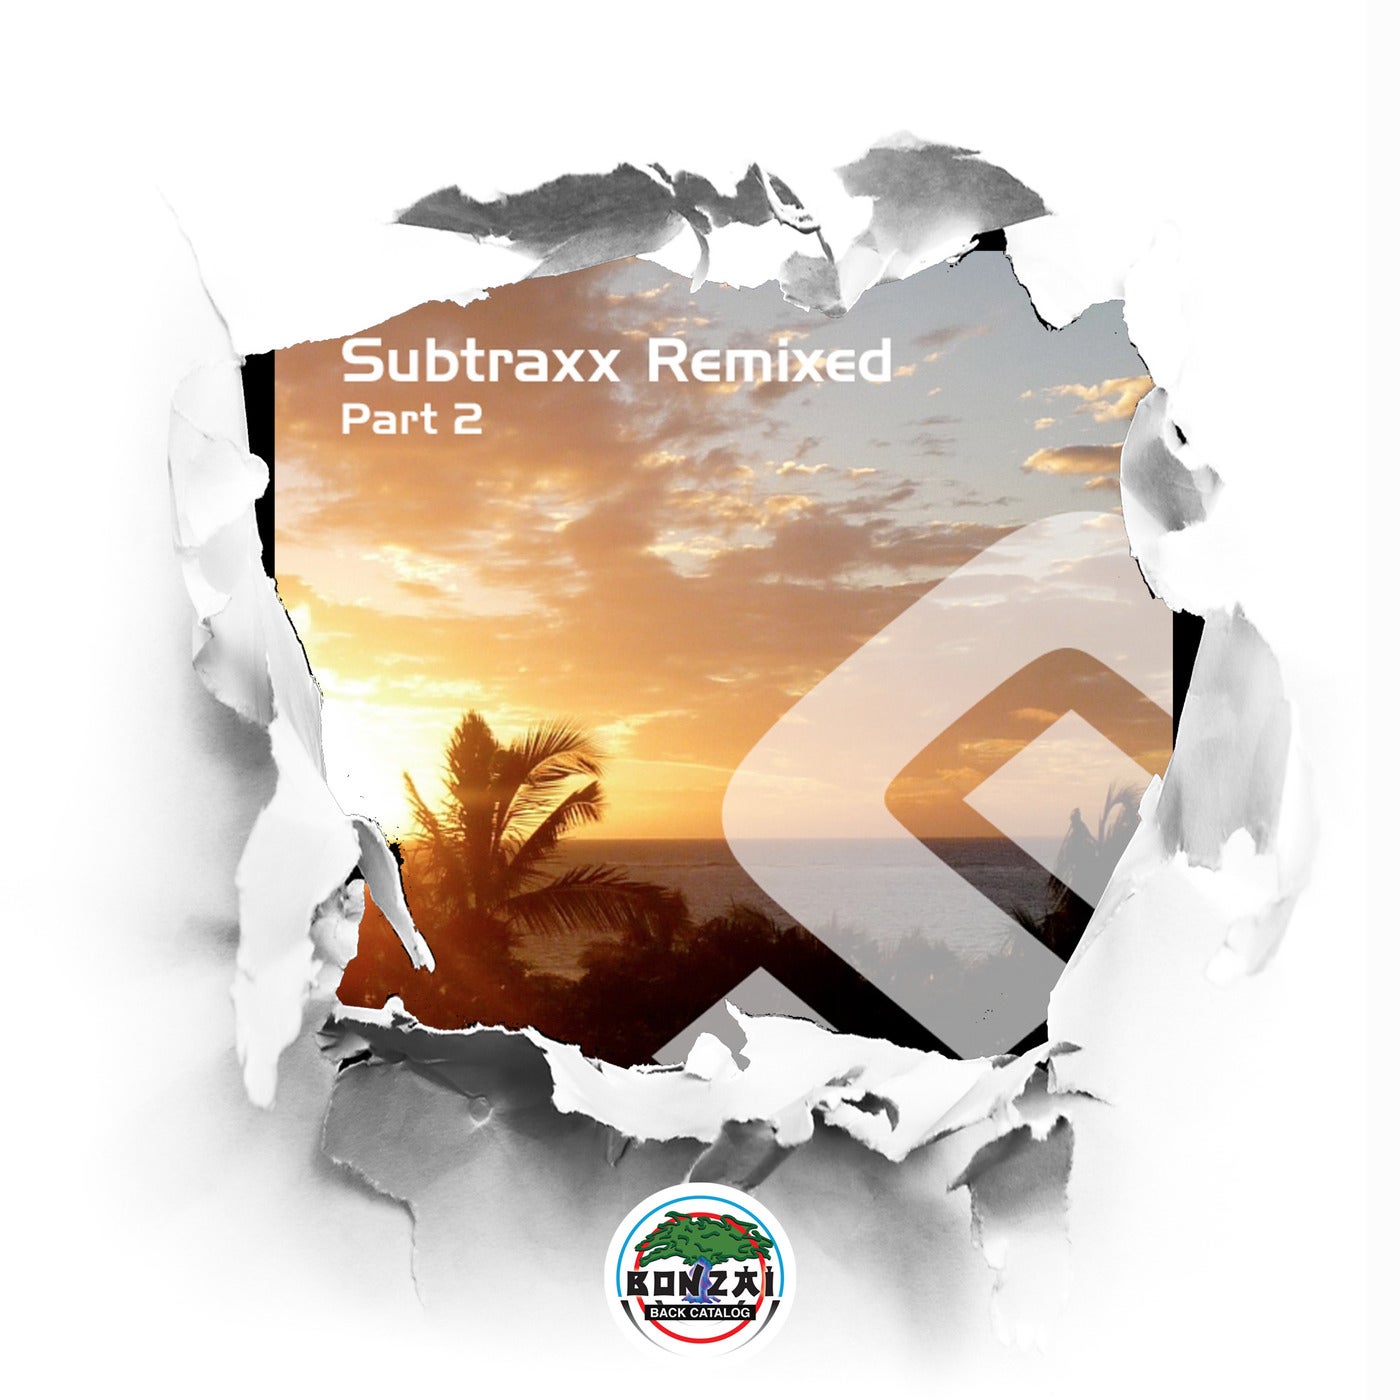 Subtraxx Remixed - Part 2